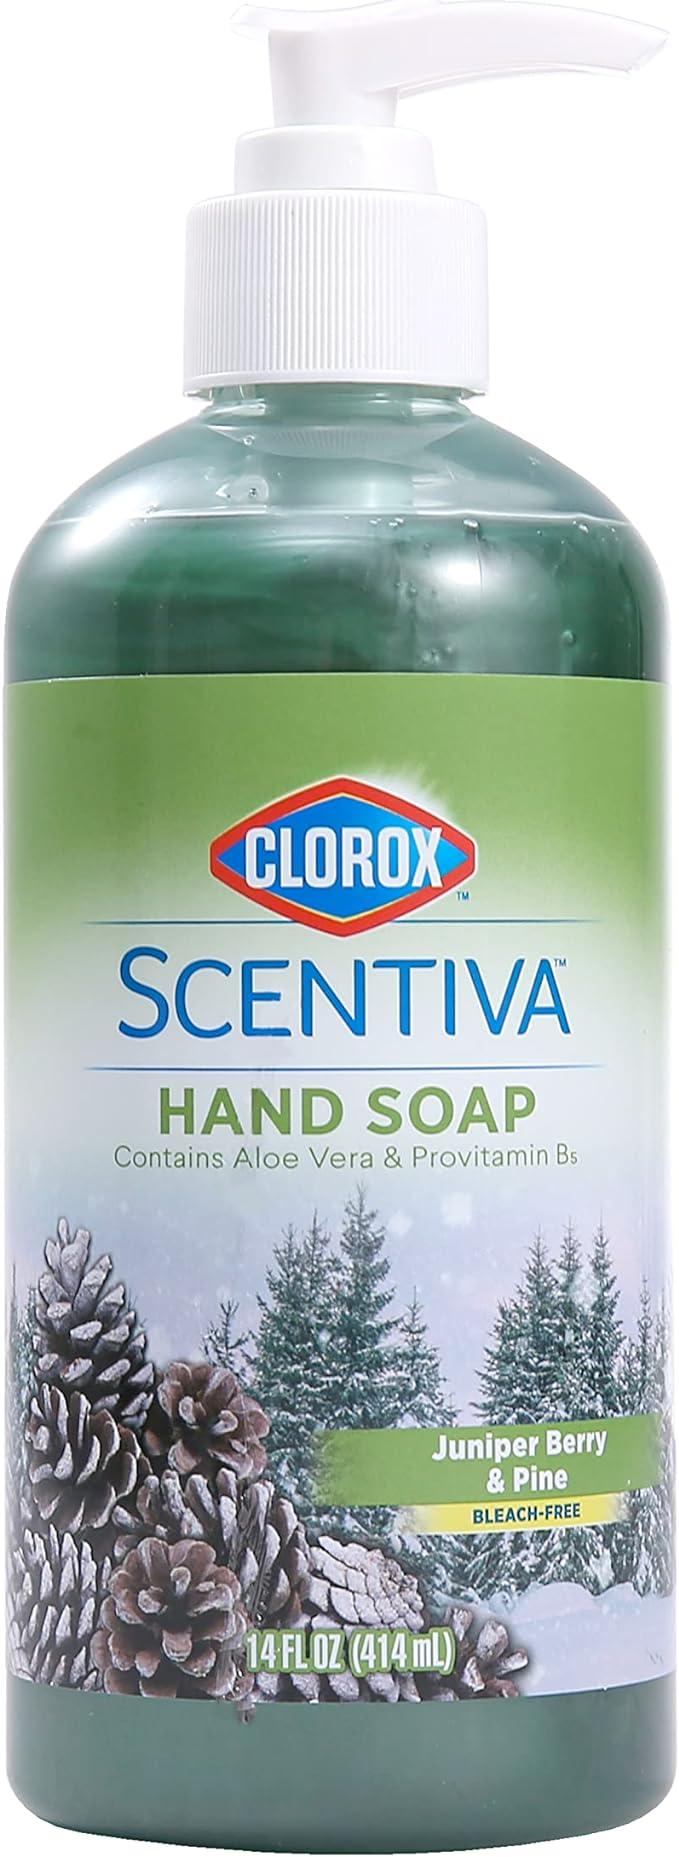 clorox scentiva liquid hand soap  clorox b0bbyj9rv9